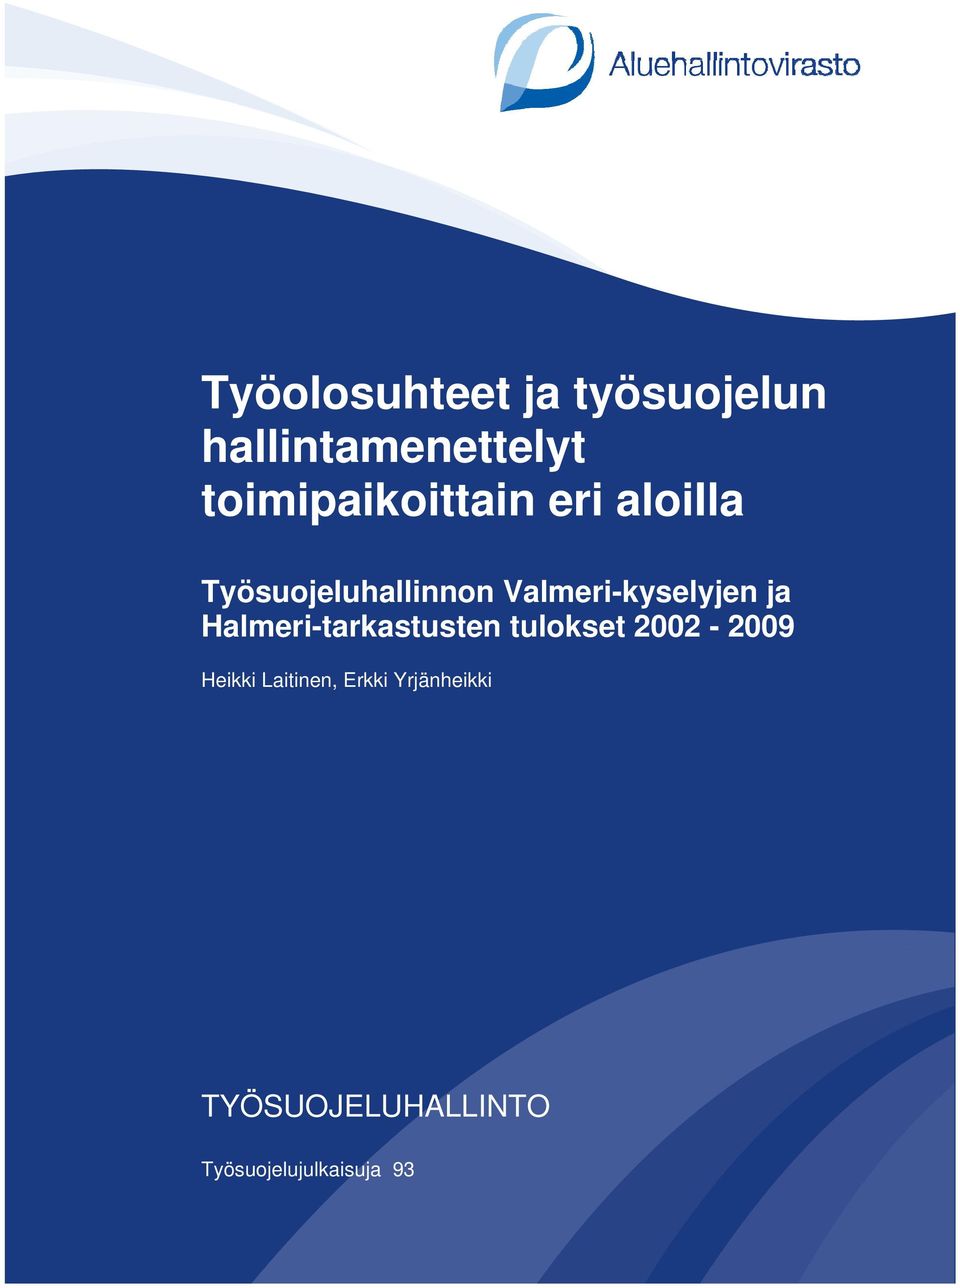 -kyselyjen ja Halmeri-tarkastusten tulokset 2002-2009